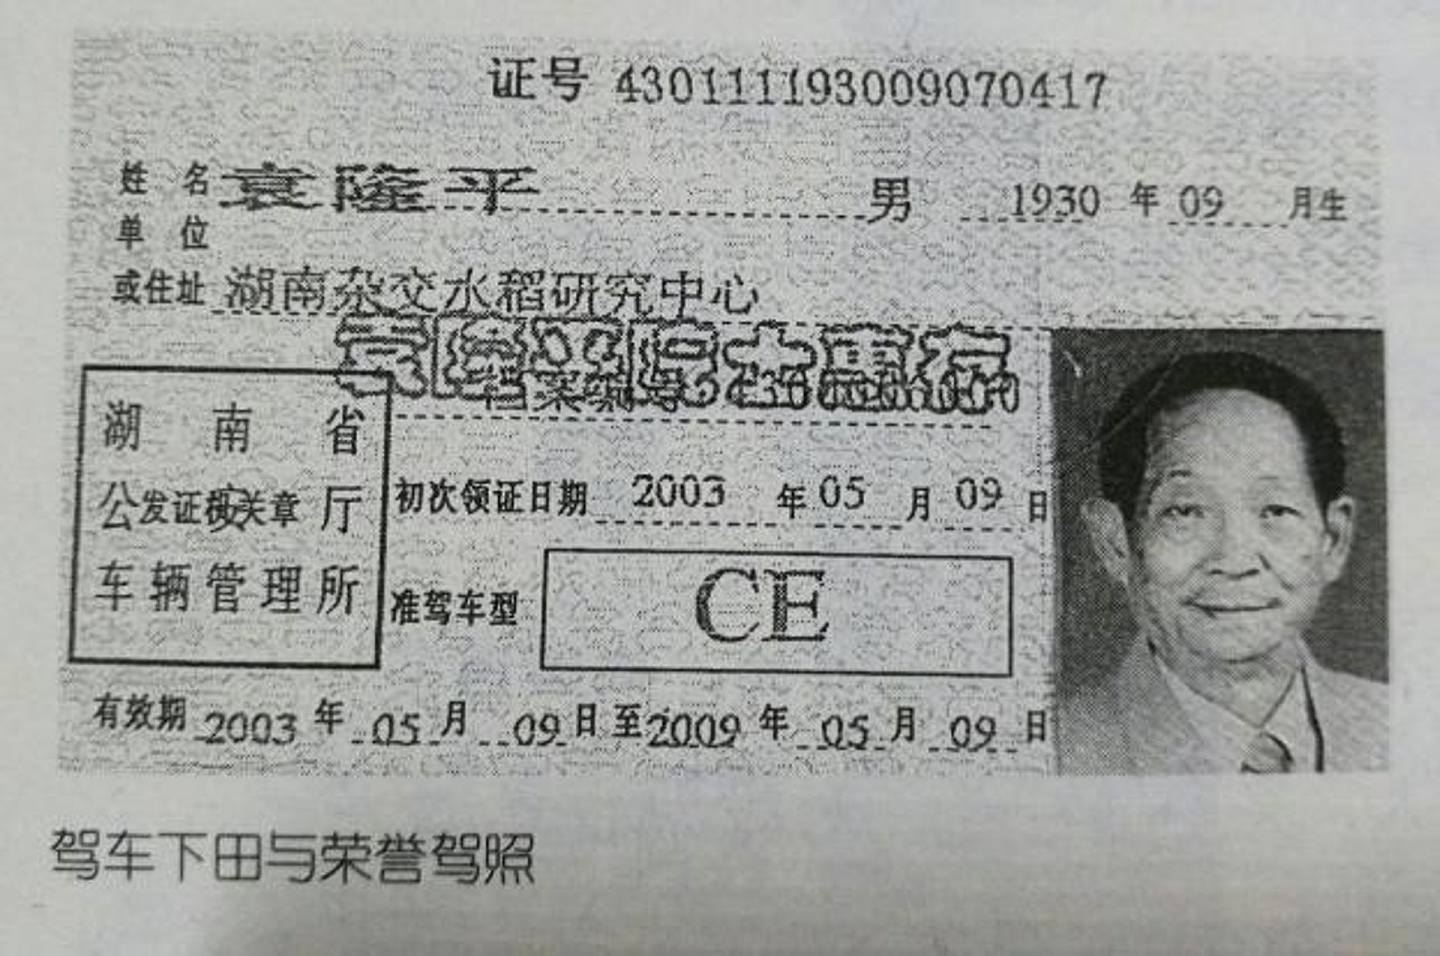 袁隆平拥有荣誉驾照，但只能用于往返科研基地、居住地与试验田之间。 （新汽车志）